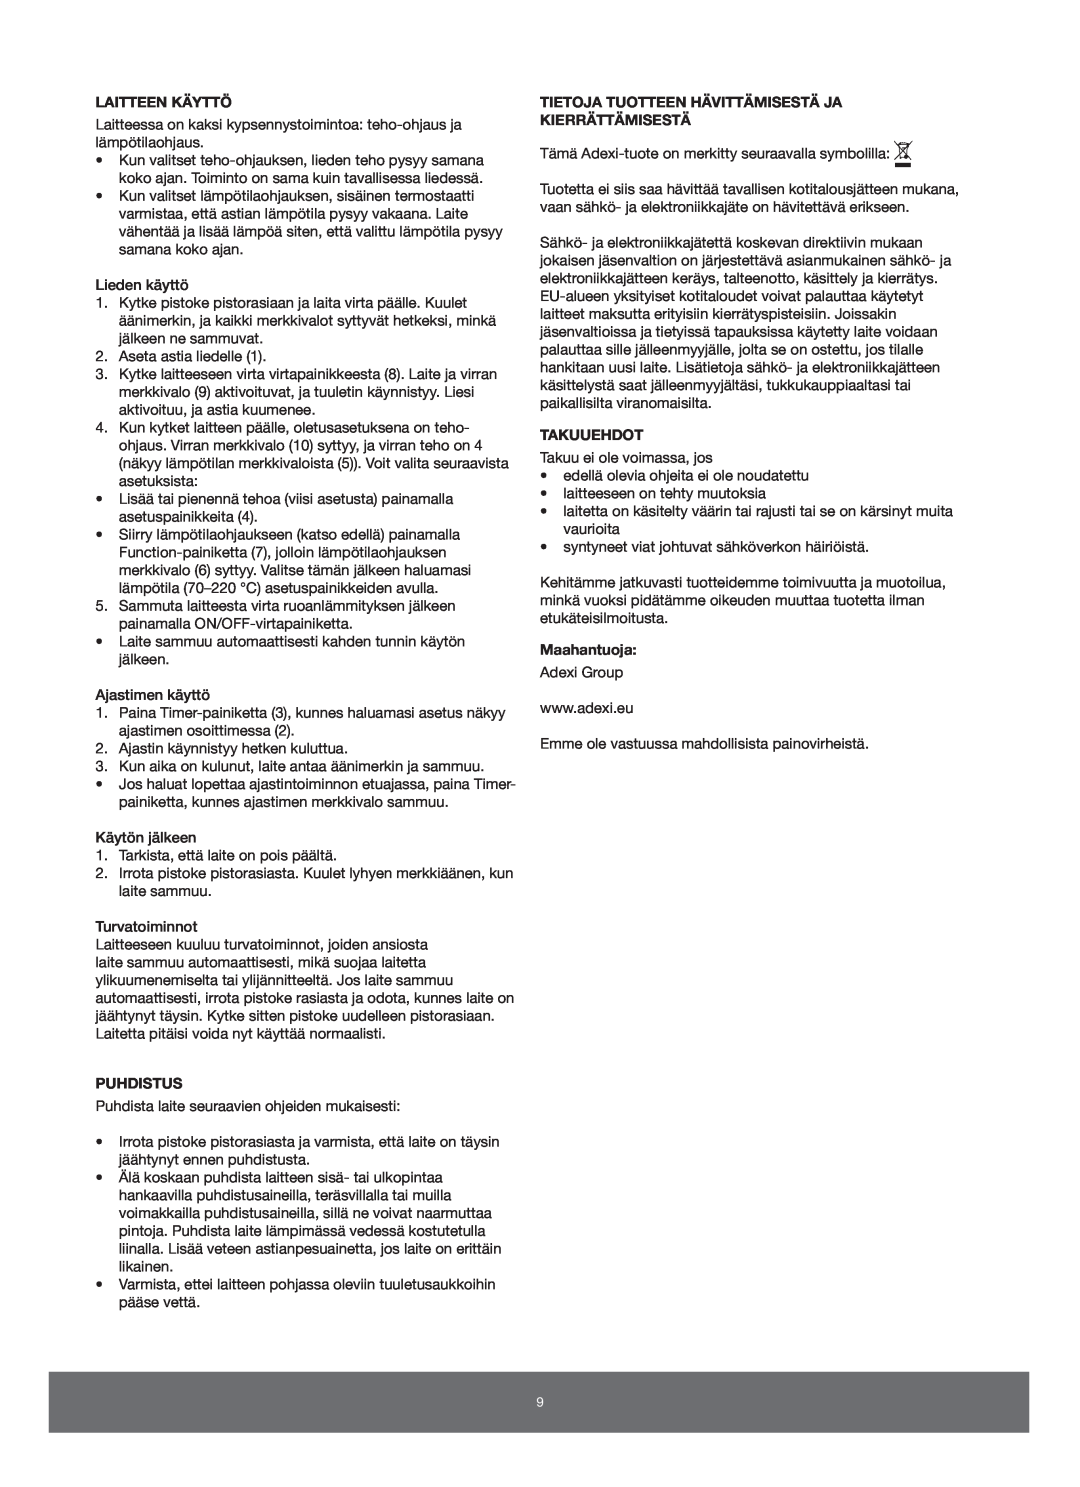 Melissa 650-005/006 manual Laitteen Käyttö, Puhdistus, Tietoja Tuotteen Hävittämisestä Ja Kierrättämisestä, Takuuehdot 